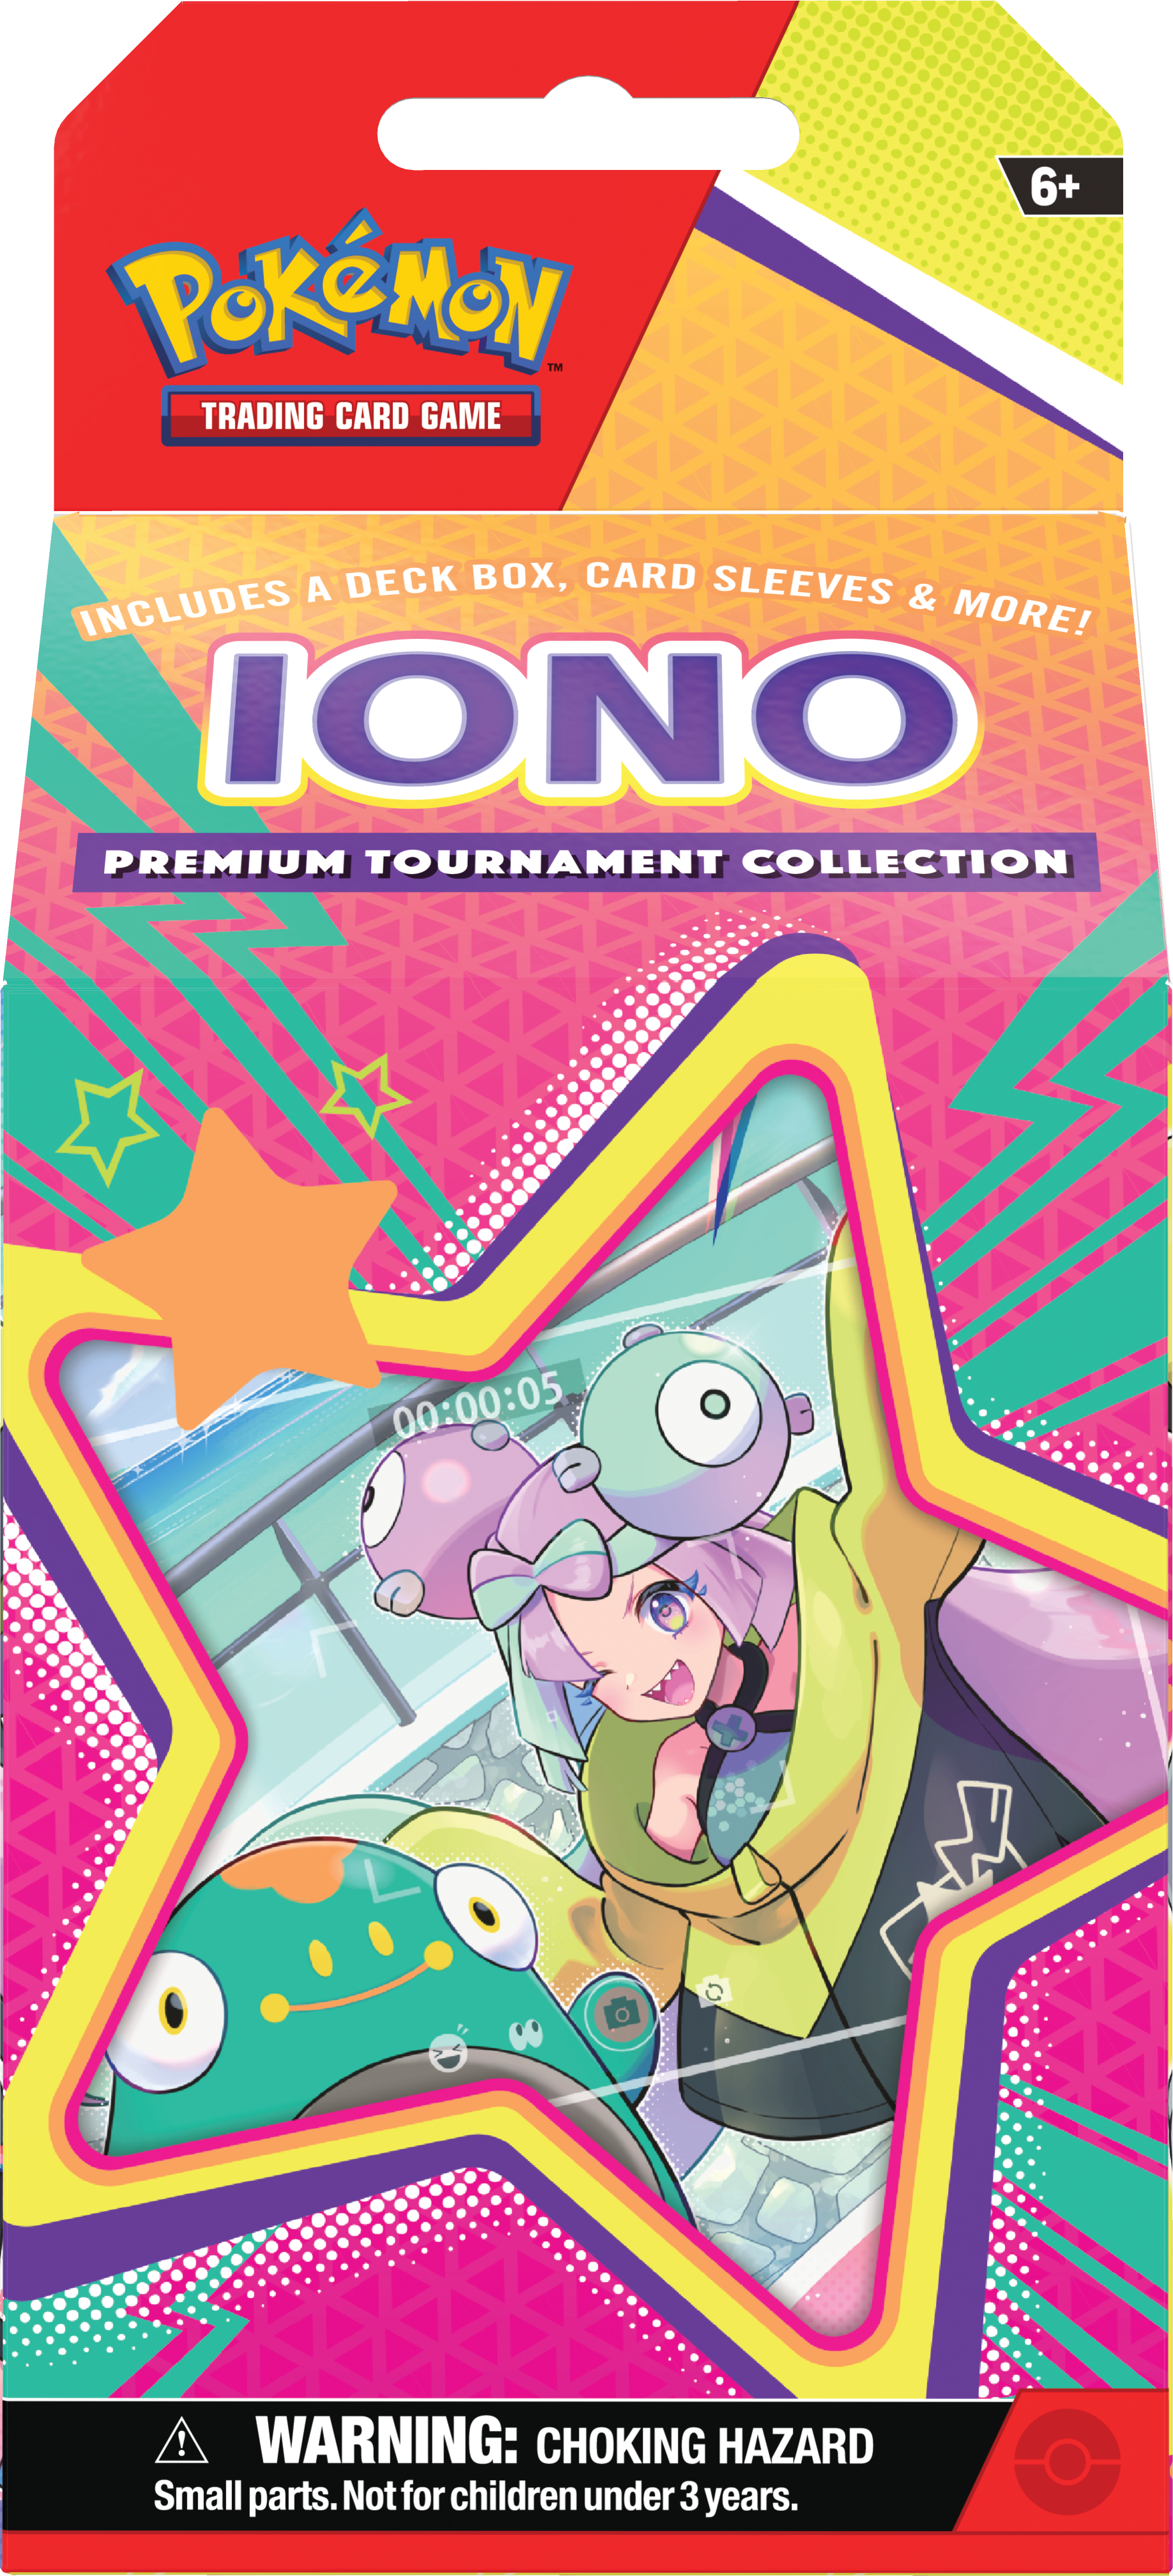 Pokemon TCG Escarlata y Purpura: Coleccion De Torneos Premium De Iono En Español